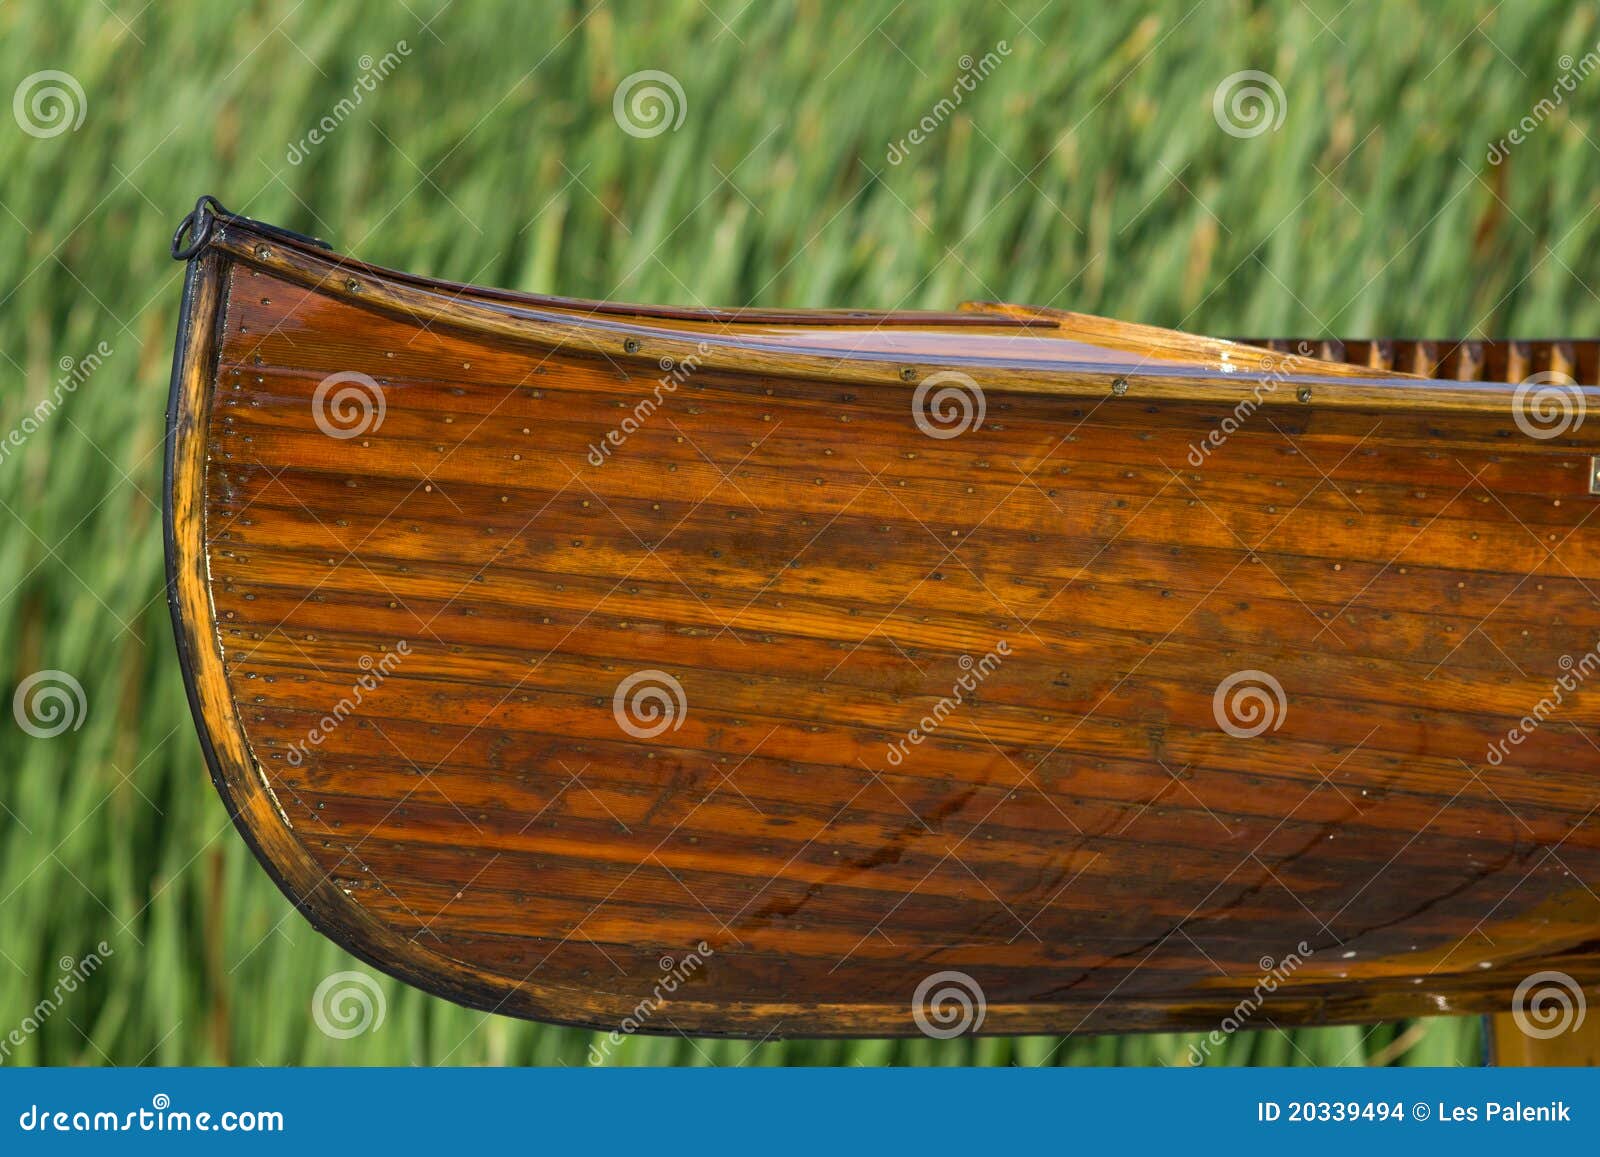 More similar stock images of ` Cedar strip handmade canoe `